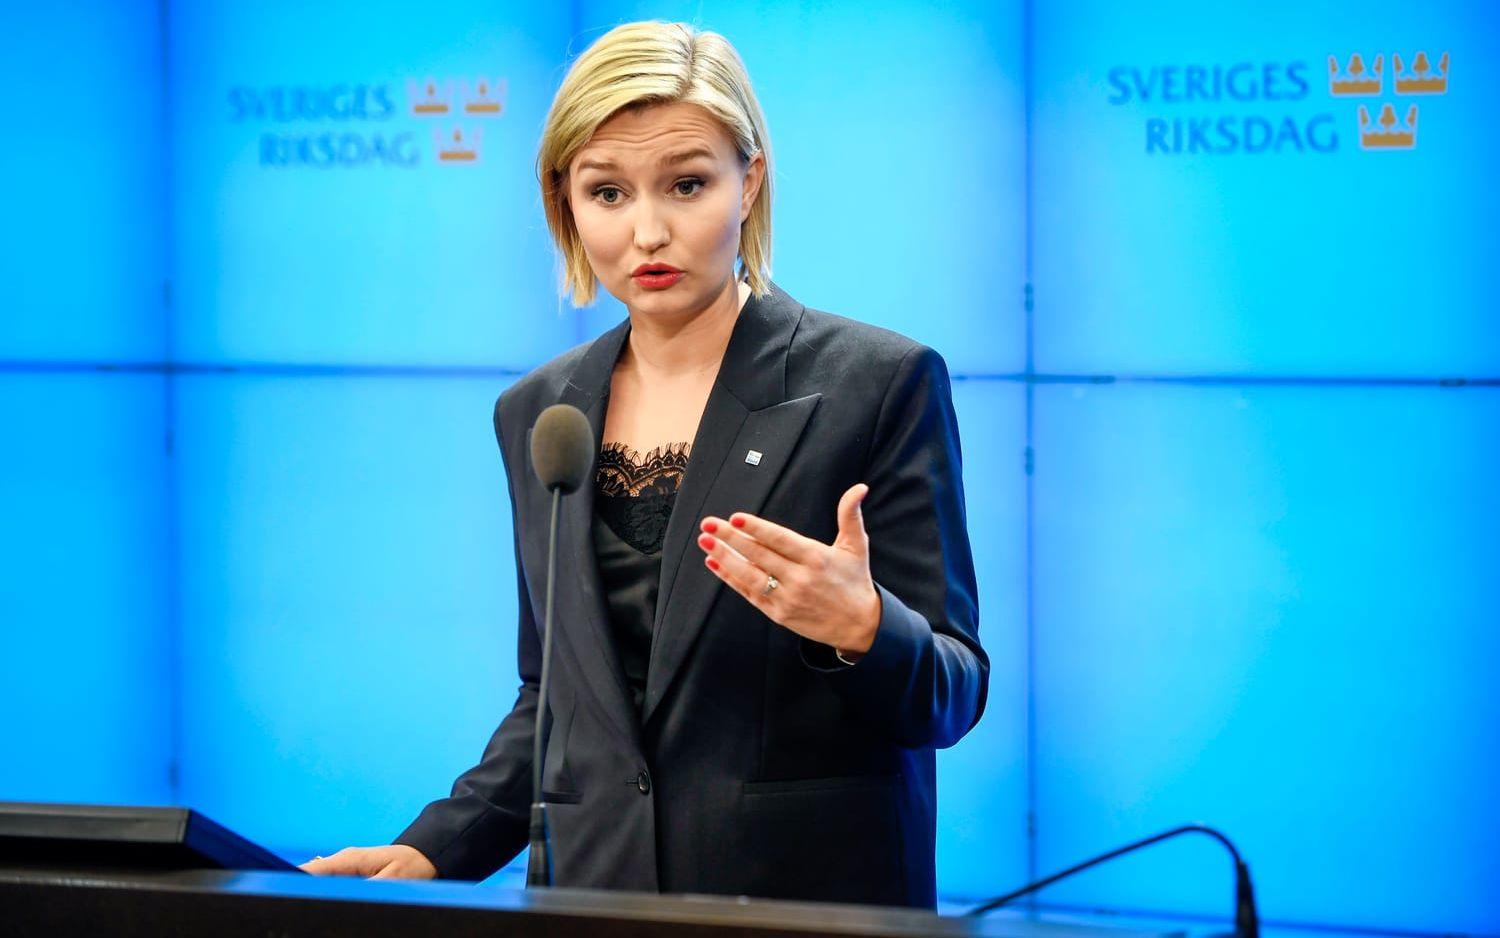 Kristdemokraternas partiledare Ebba Busch Thor kommenterar regeringsfrågan vid en presskonferens på lördagen.